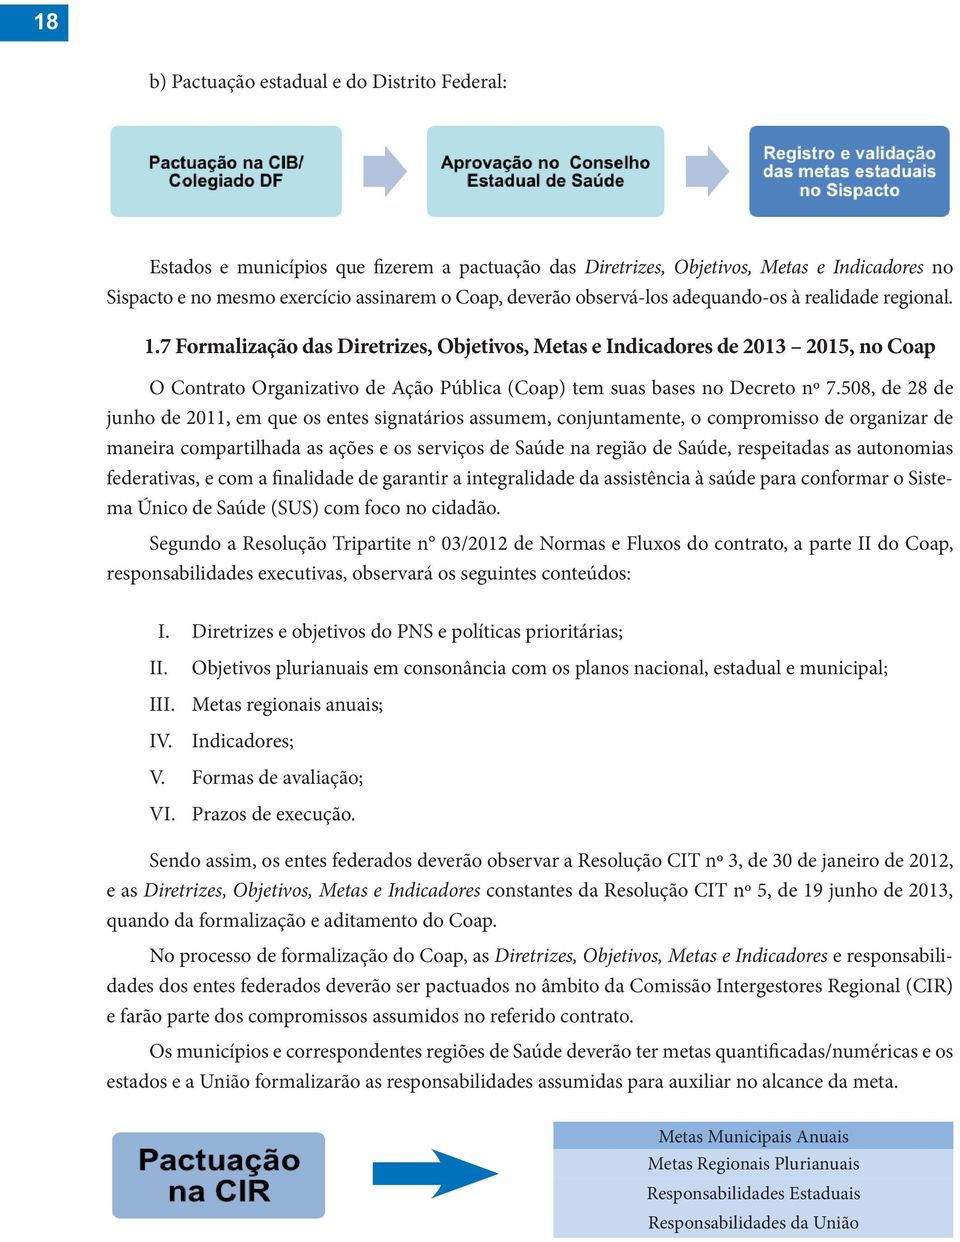 7 Formalização das Diretrizes, Objetivos, Metas e Indicadores de 2013 2015, no Coap O Contrato Organizativo de Ação Pública (Coap) tem suas bases no Decreto nº 7.